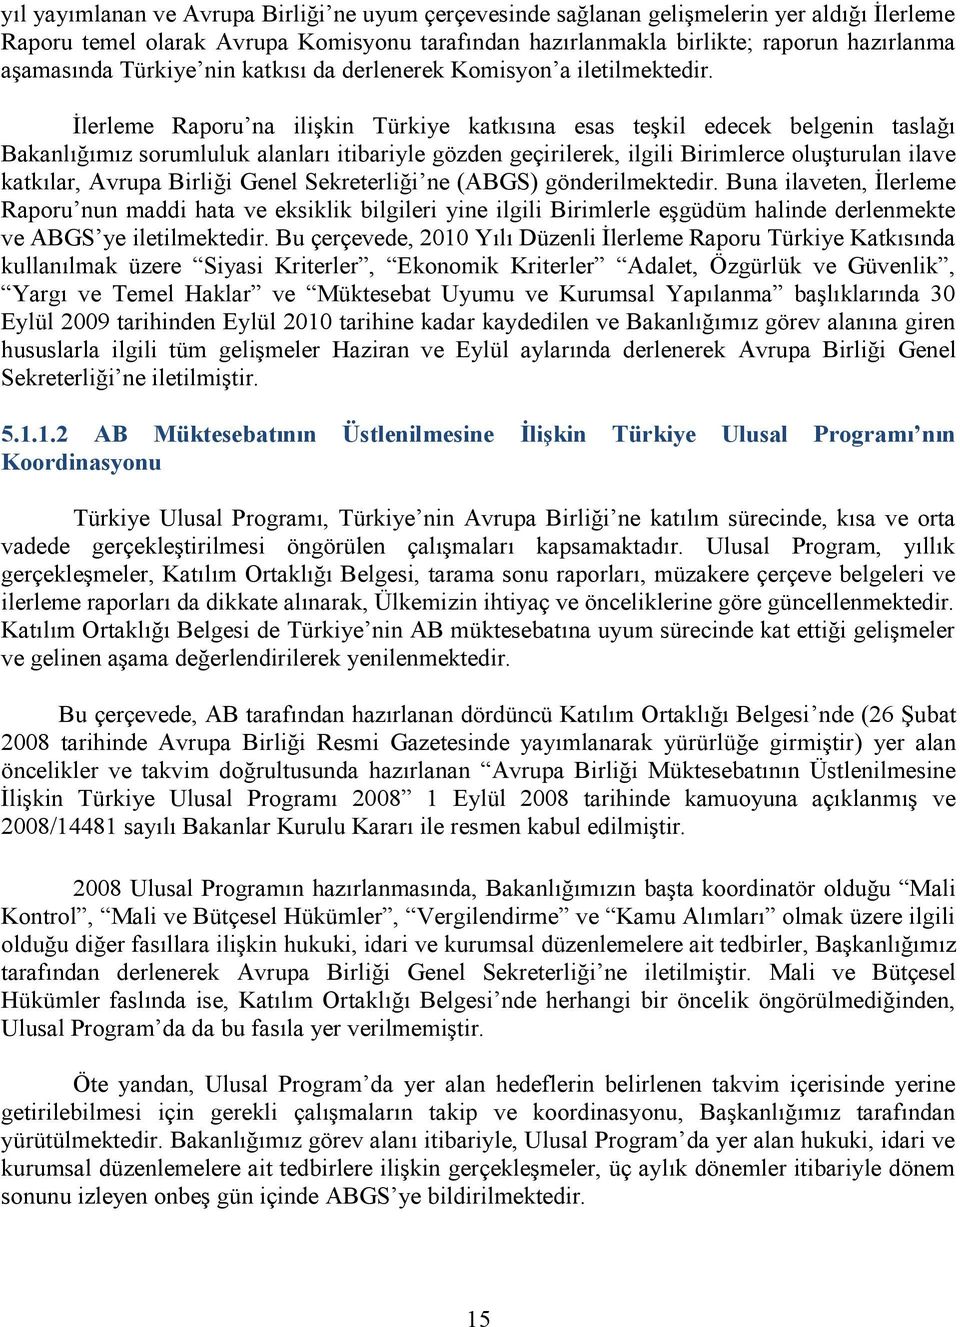 İlerleme Raporu na ilişkin Türkiye katkısına esas teşkil edecek belgenin taslağı Bakanlığımız sorumluluk alanları itibariyle gözden geçirilerek, ilgili Birimlerce oluşturulan ilave katkılar, Avrupa